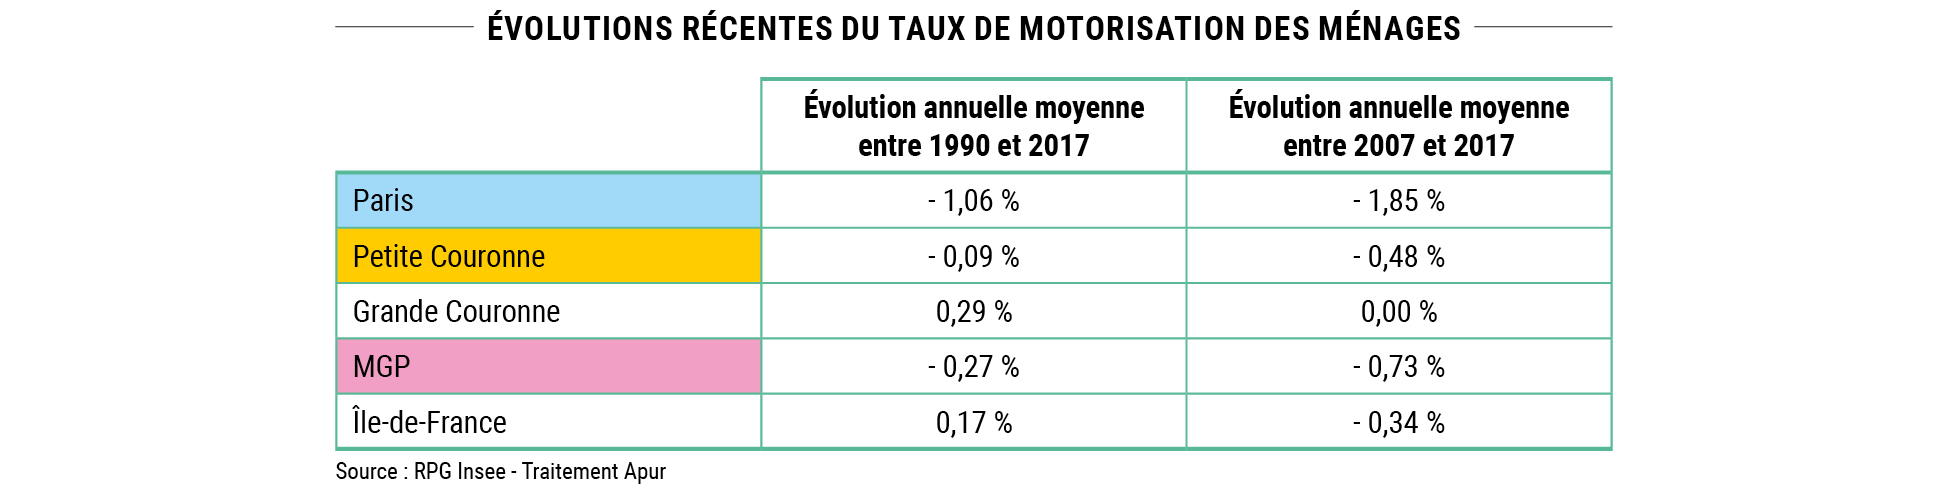 Synthèse mobilités #11 - Évolutions récentes du taux de motorisation des ménages © Apur